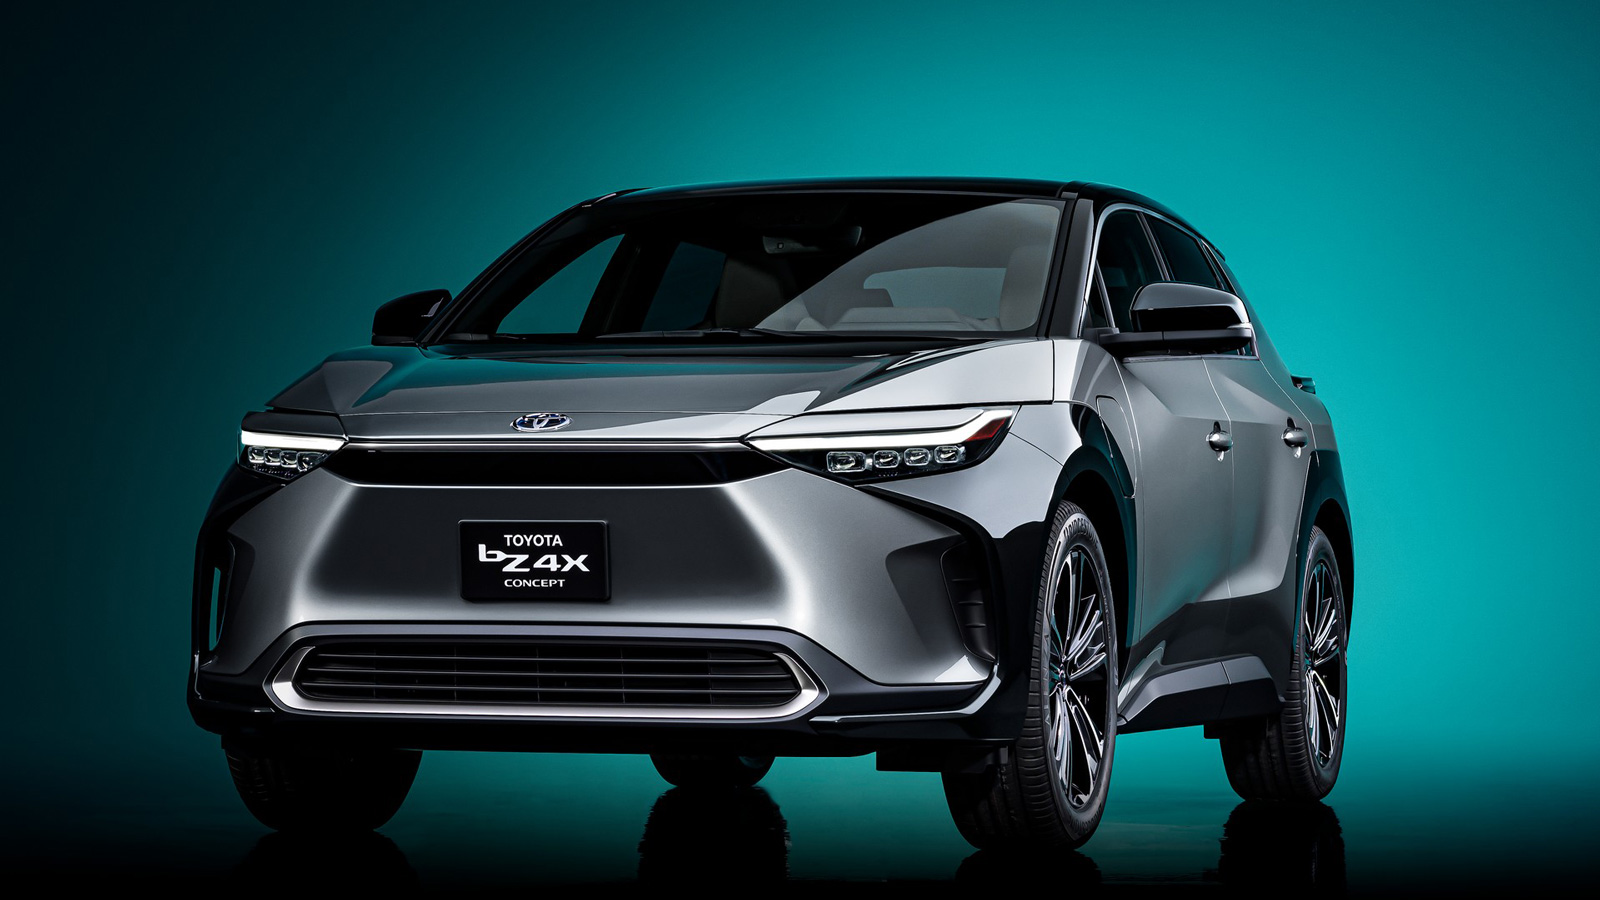 Παγκόσμια πρεμιέρα του Toyota bZ4X Concept